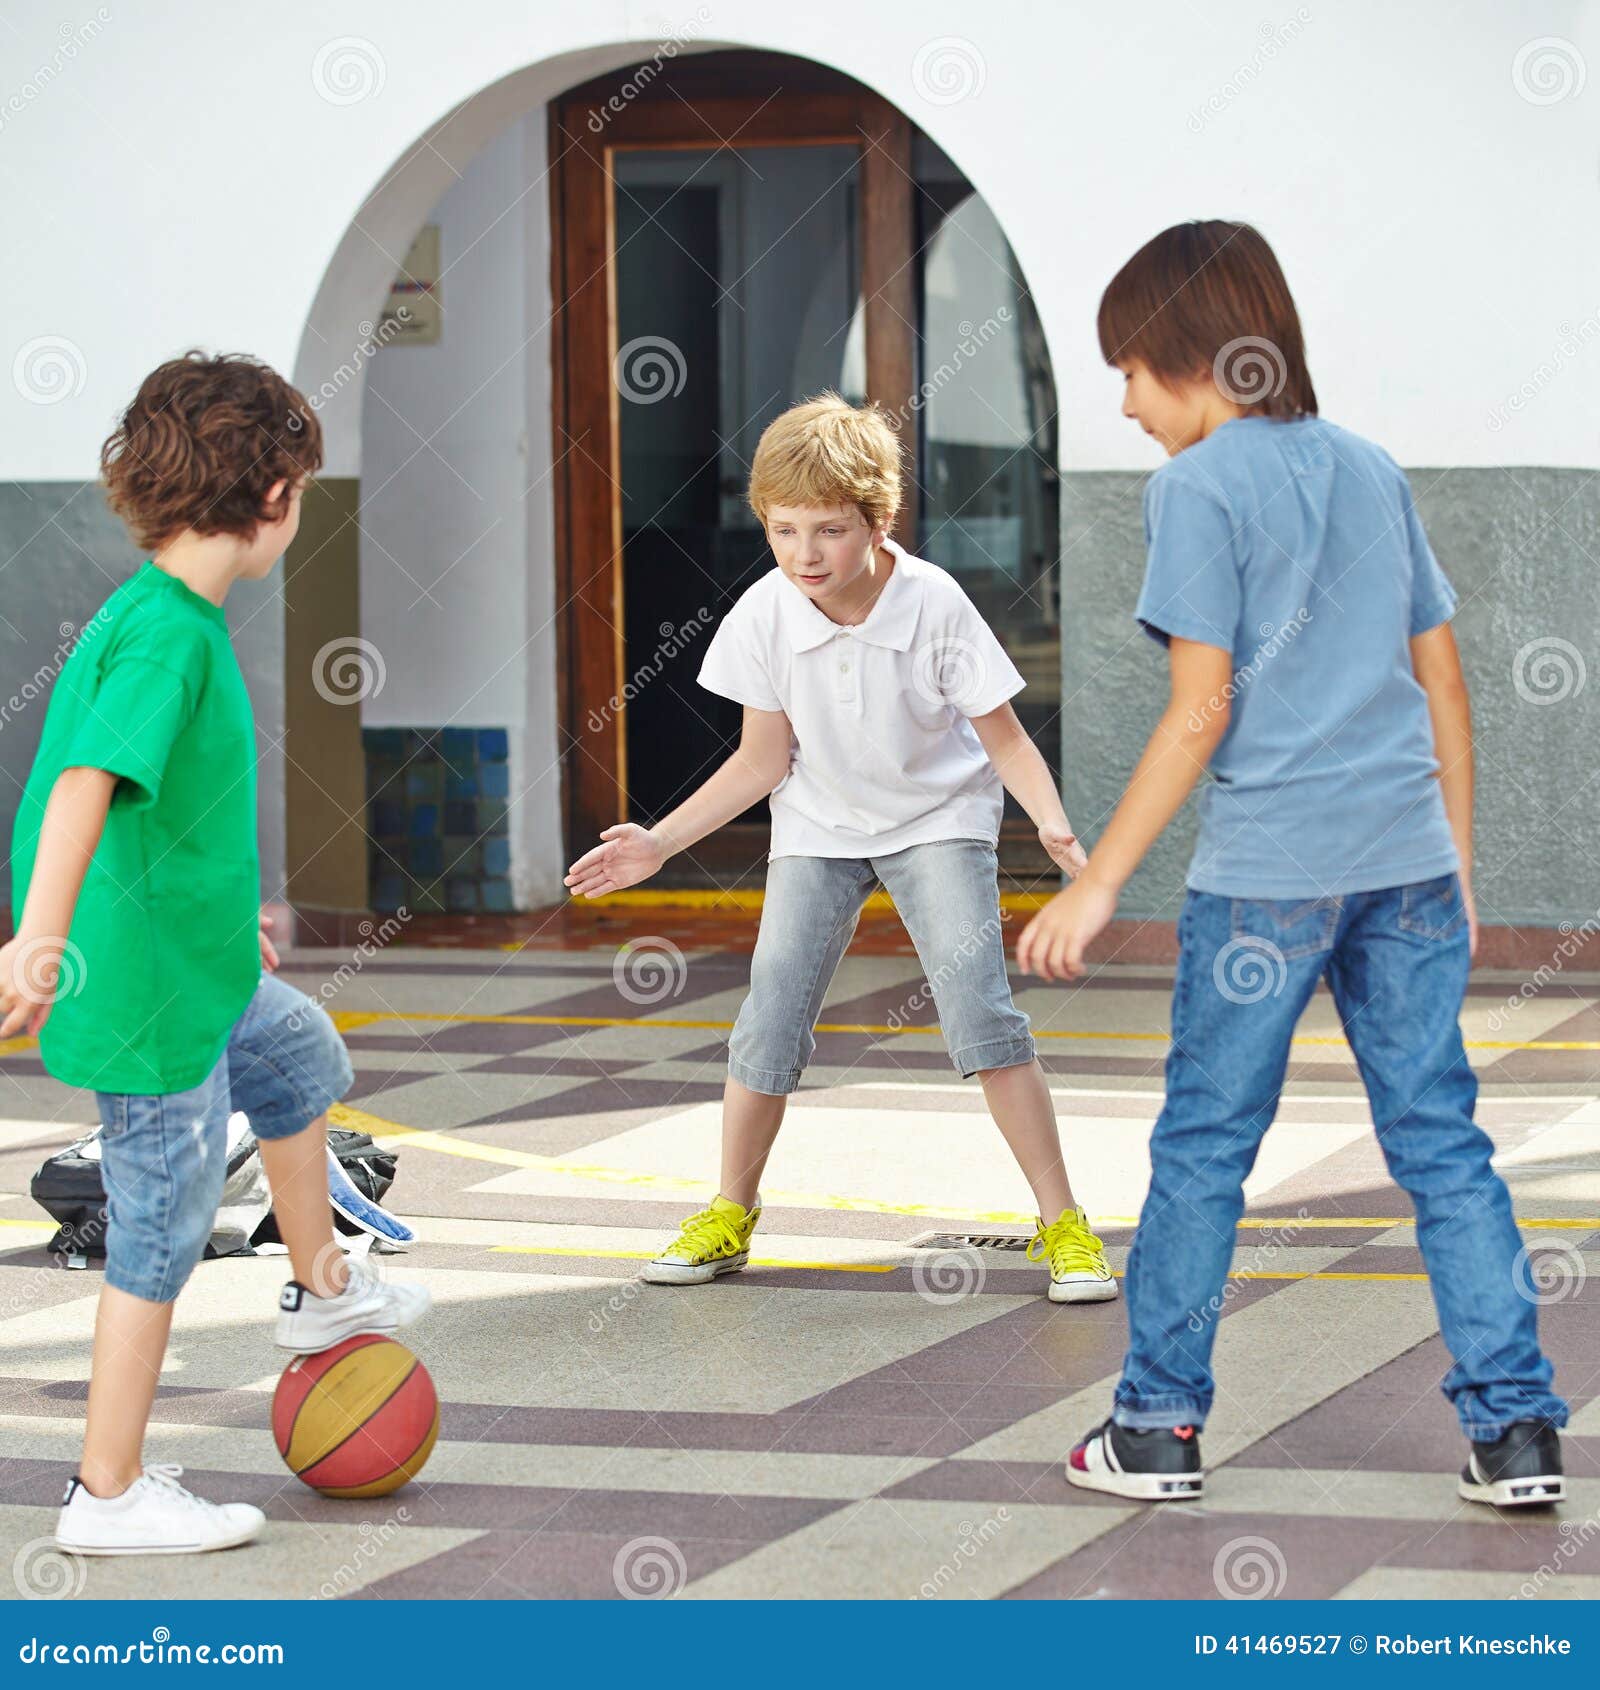 小小篮球，活力无限！——记东城之星幼儿园中班段拍球比赛_陈亦